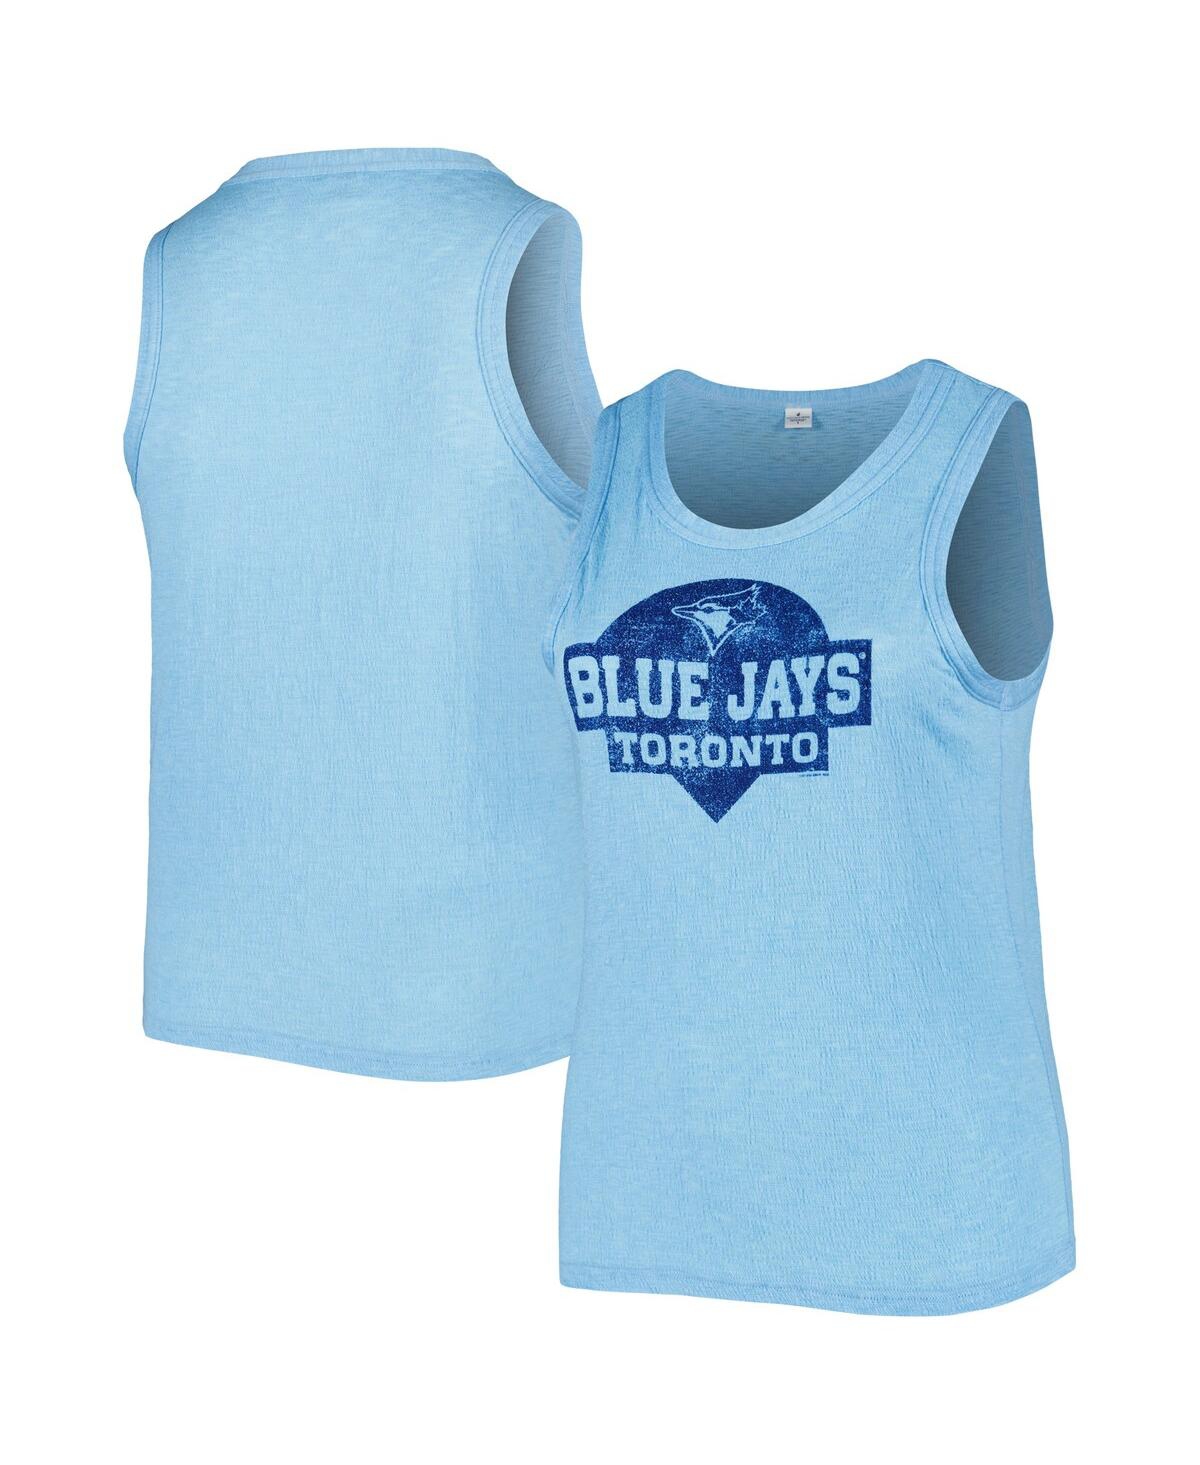 Shop Soft As A Grape Women's  Royal Toronto Blue Jays Plus Size High Neck Tri-blend Tank Top